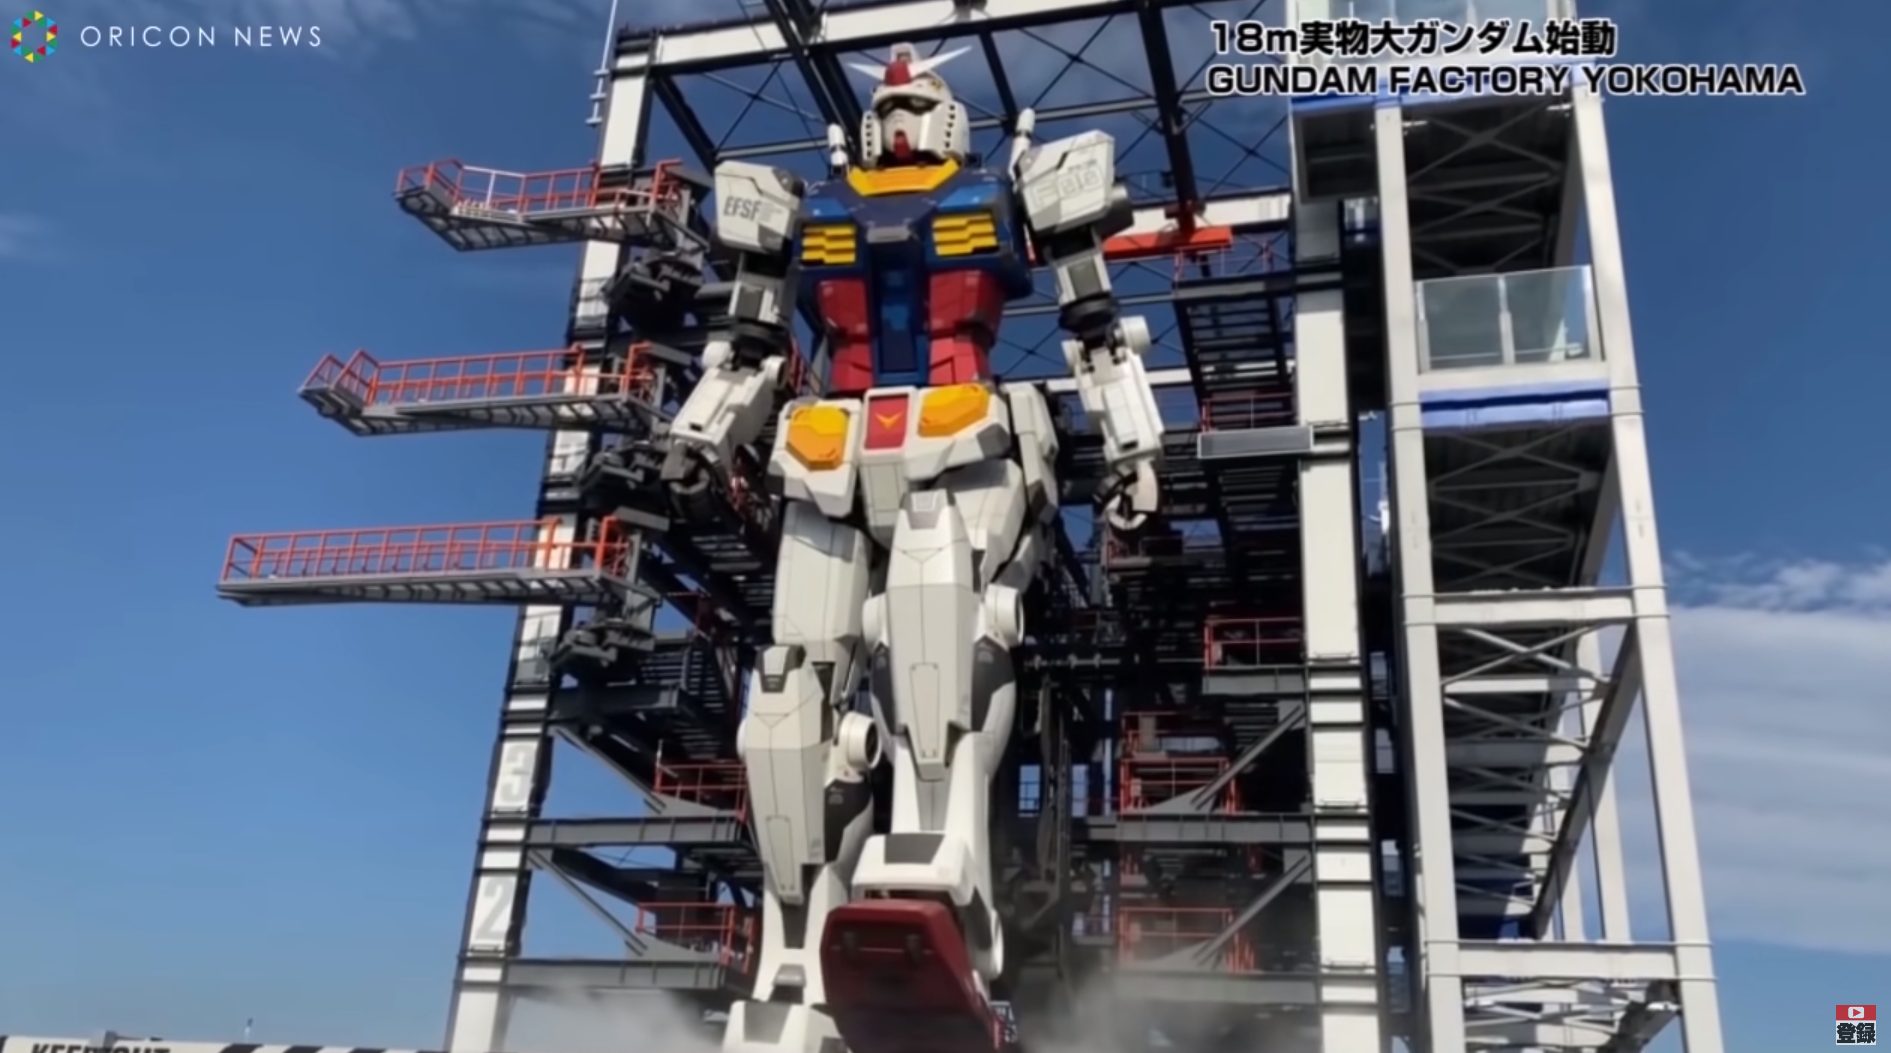 Gundam em tamanho real é apresentado à mídia em Yokohama